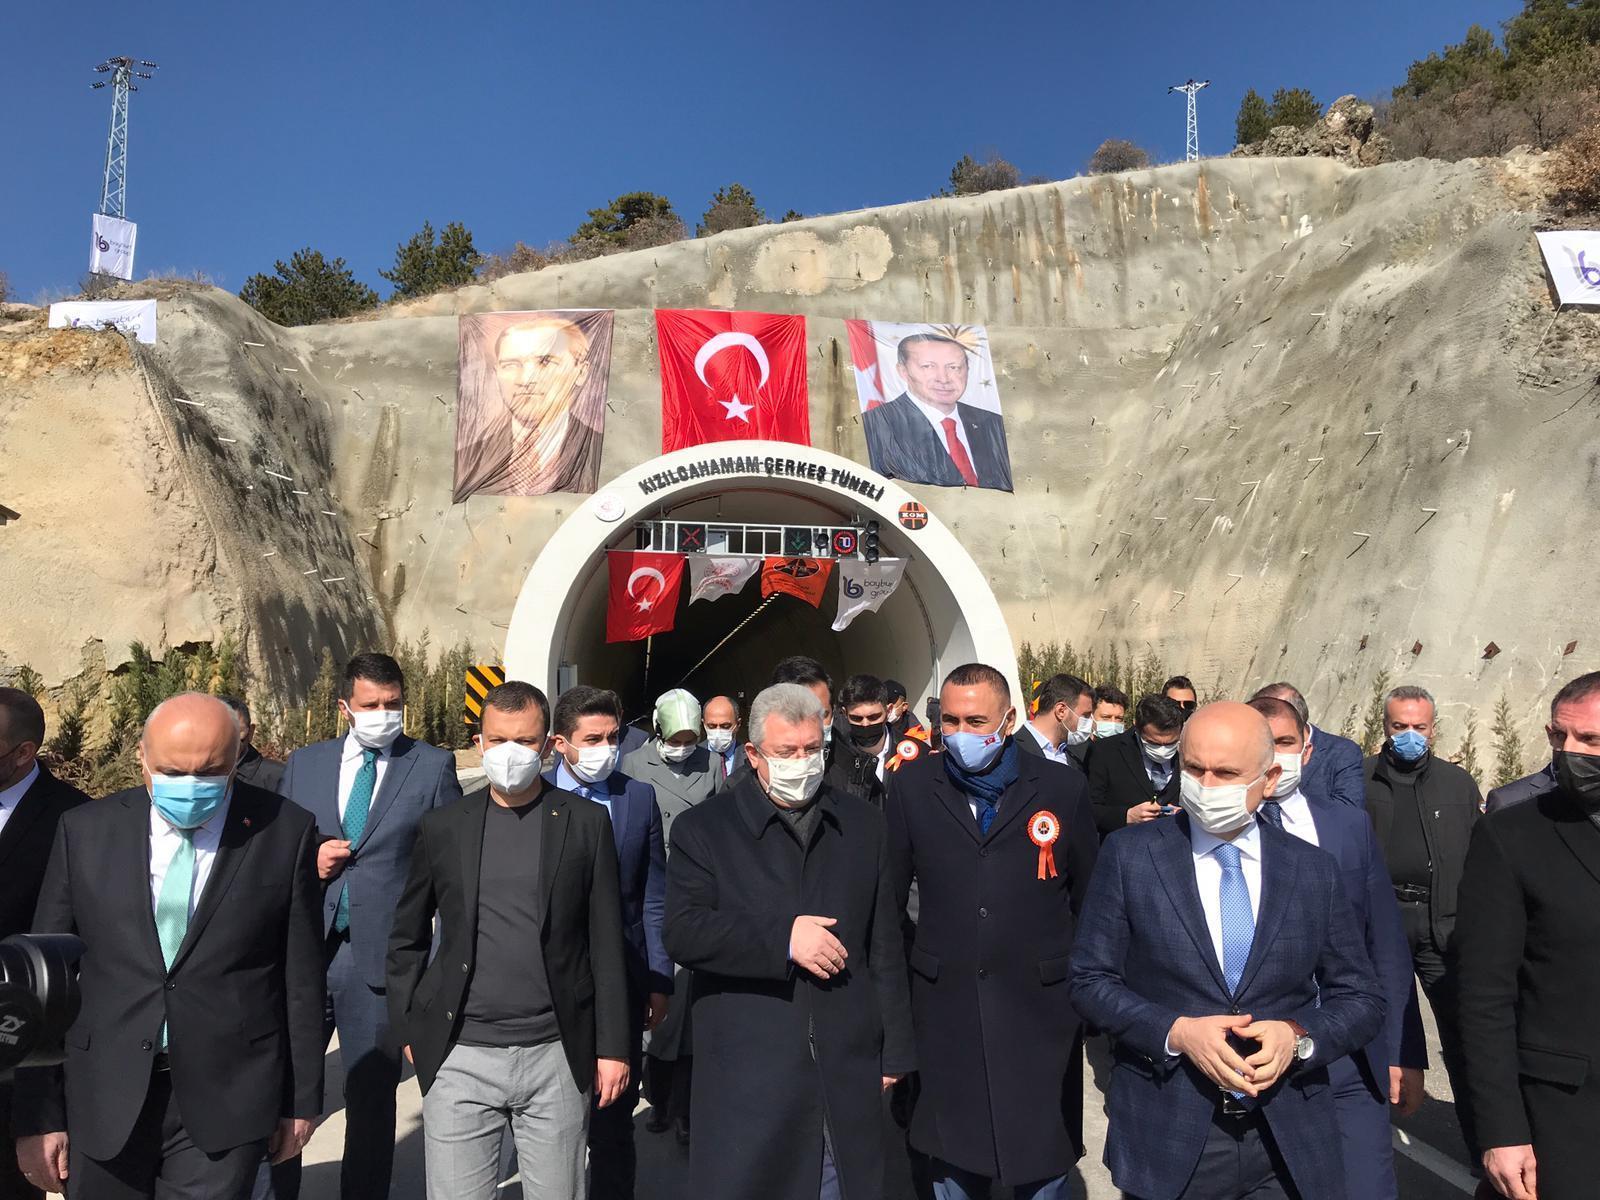 Cumhurbaşkanı Erdoğan: Gerekiyorsa hayatımızı ortaya koyuyoruz